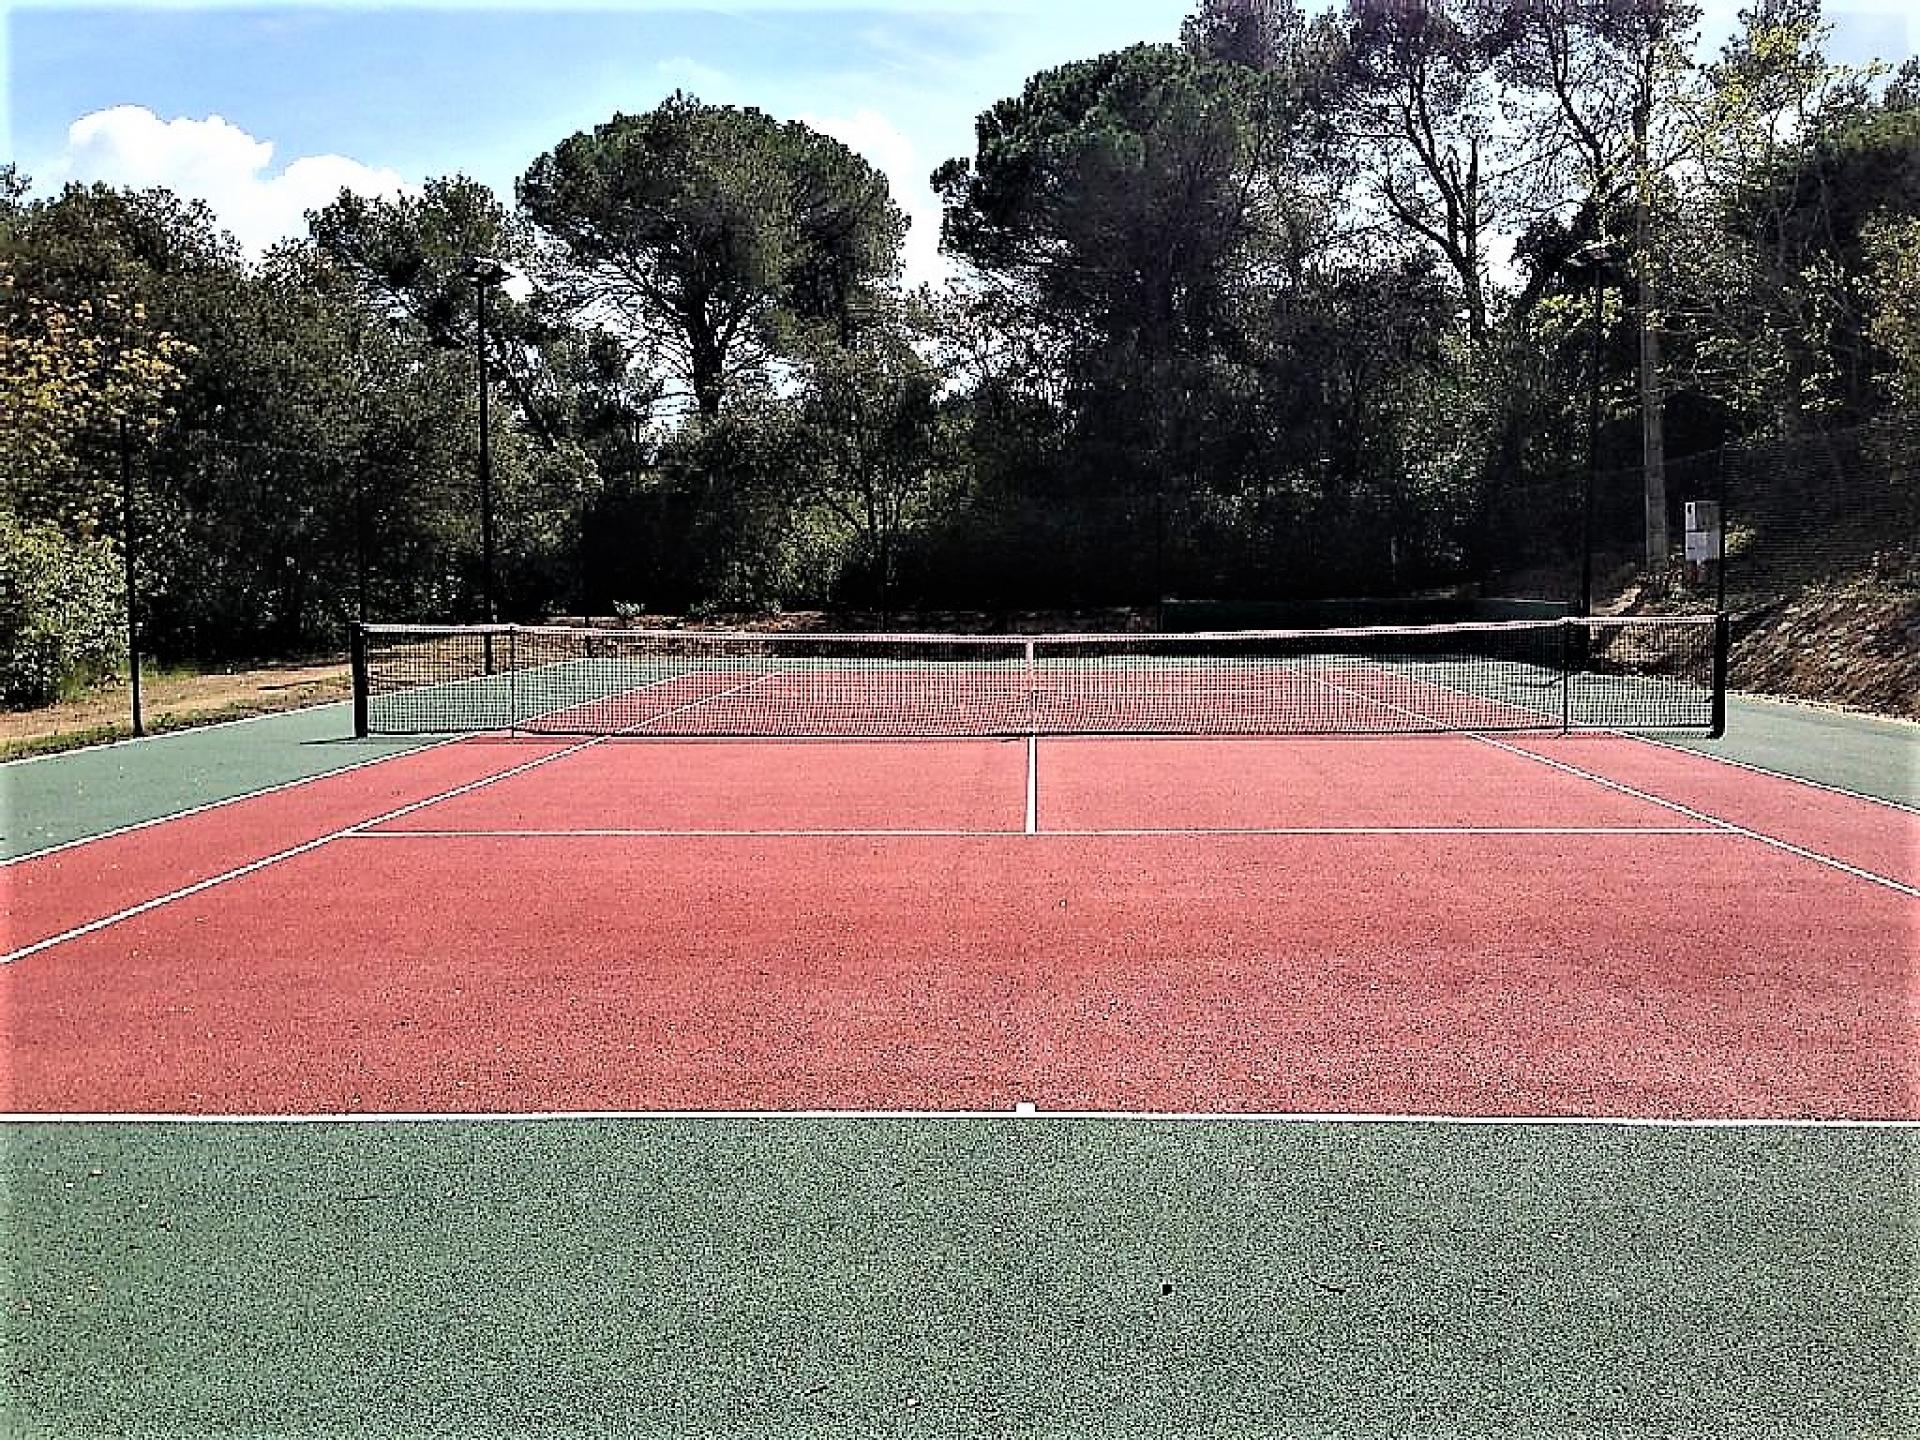 The tennis court in Chateau de la Tour Provence